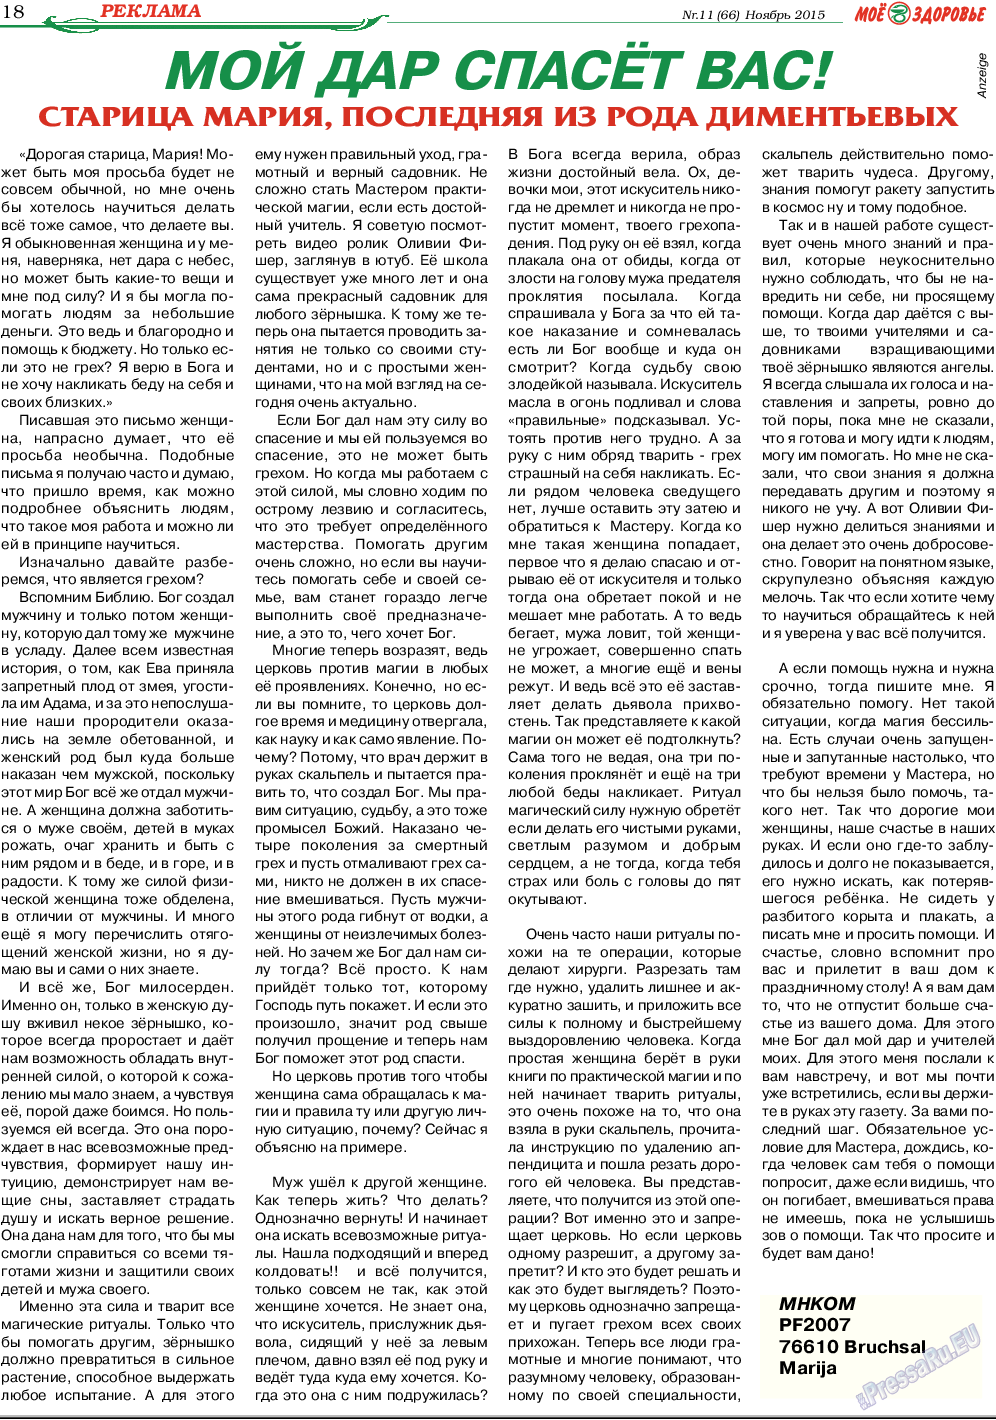 Кругозор (газета). 2015 год, номер 11, стр. 18